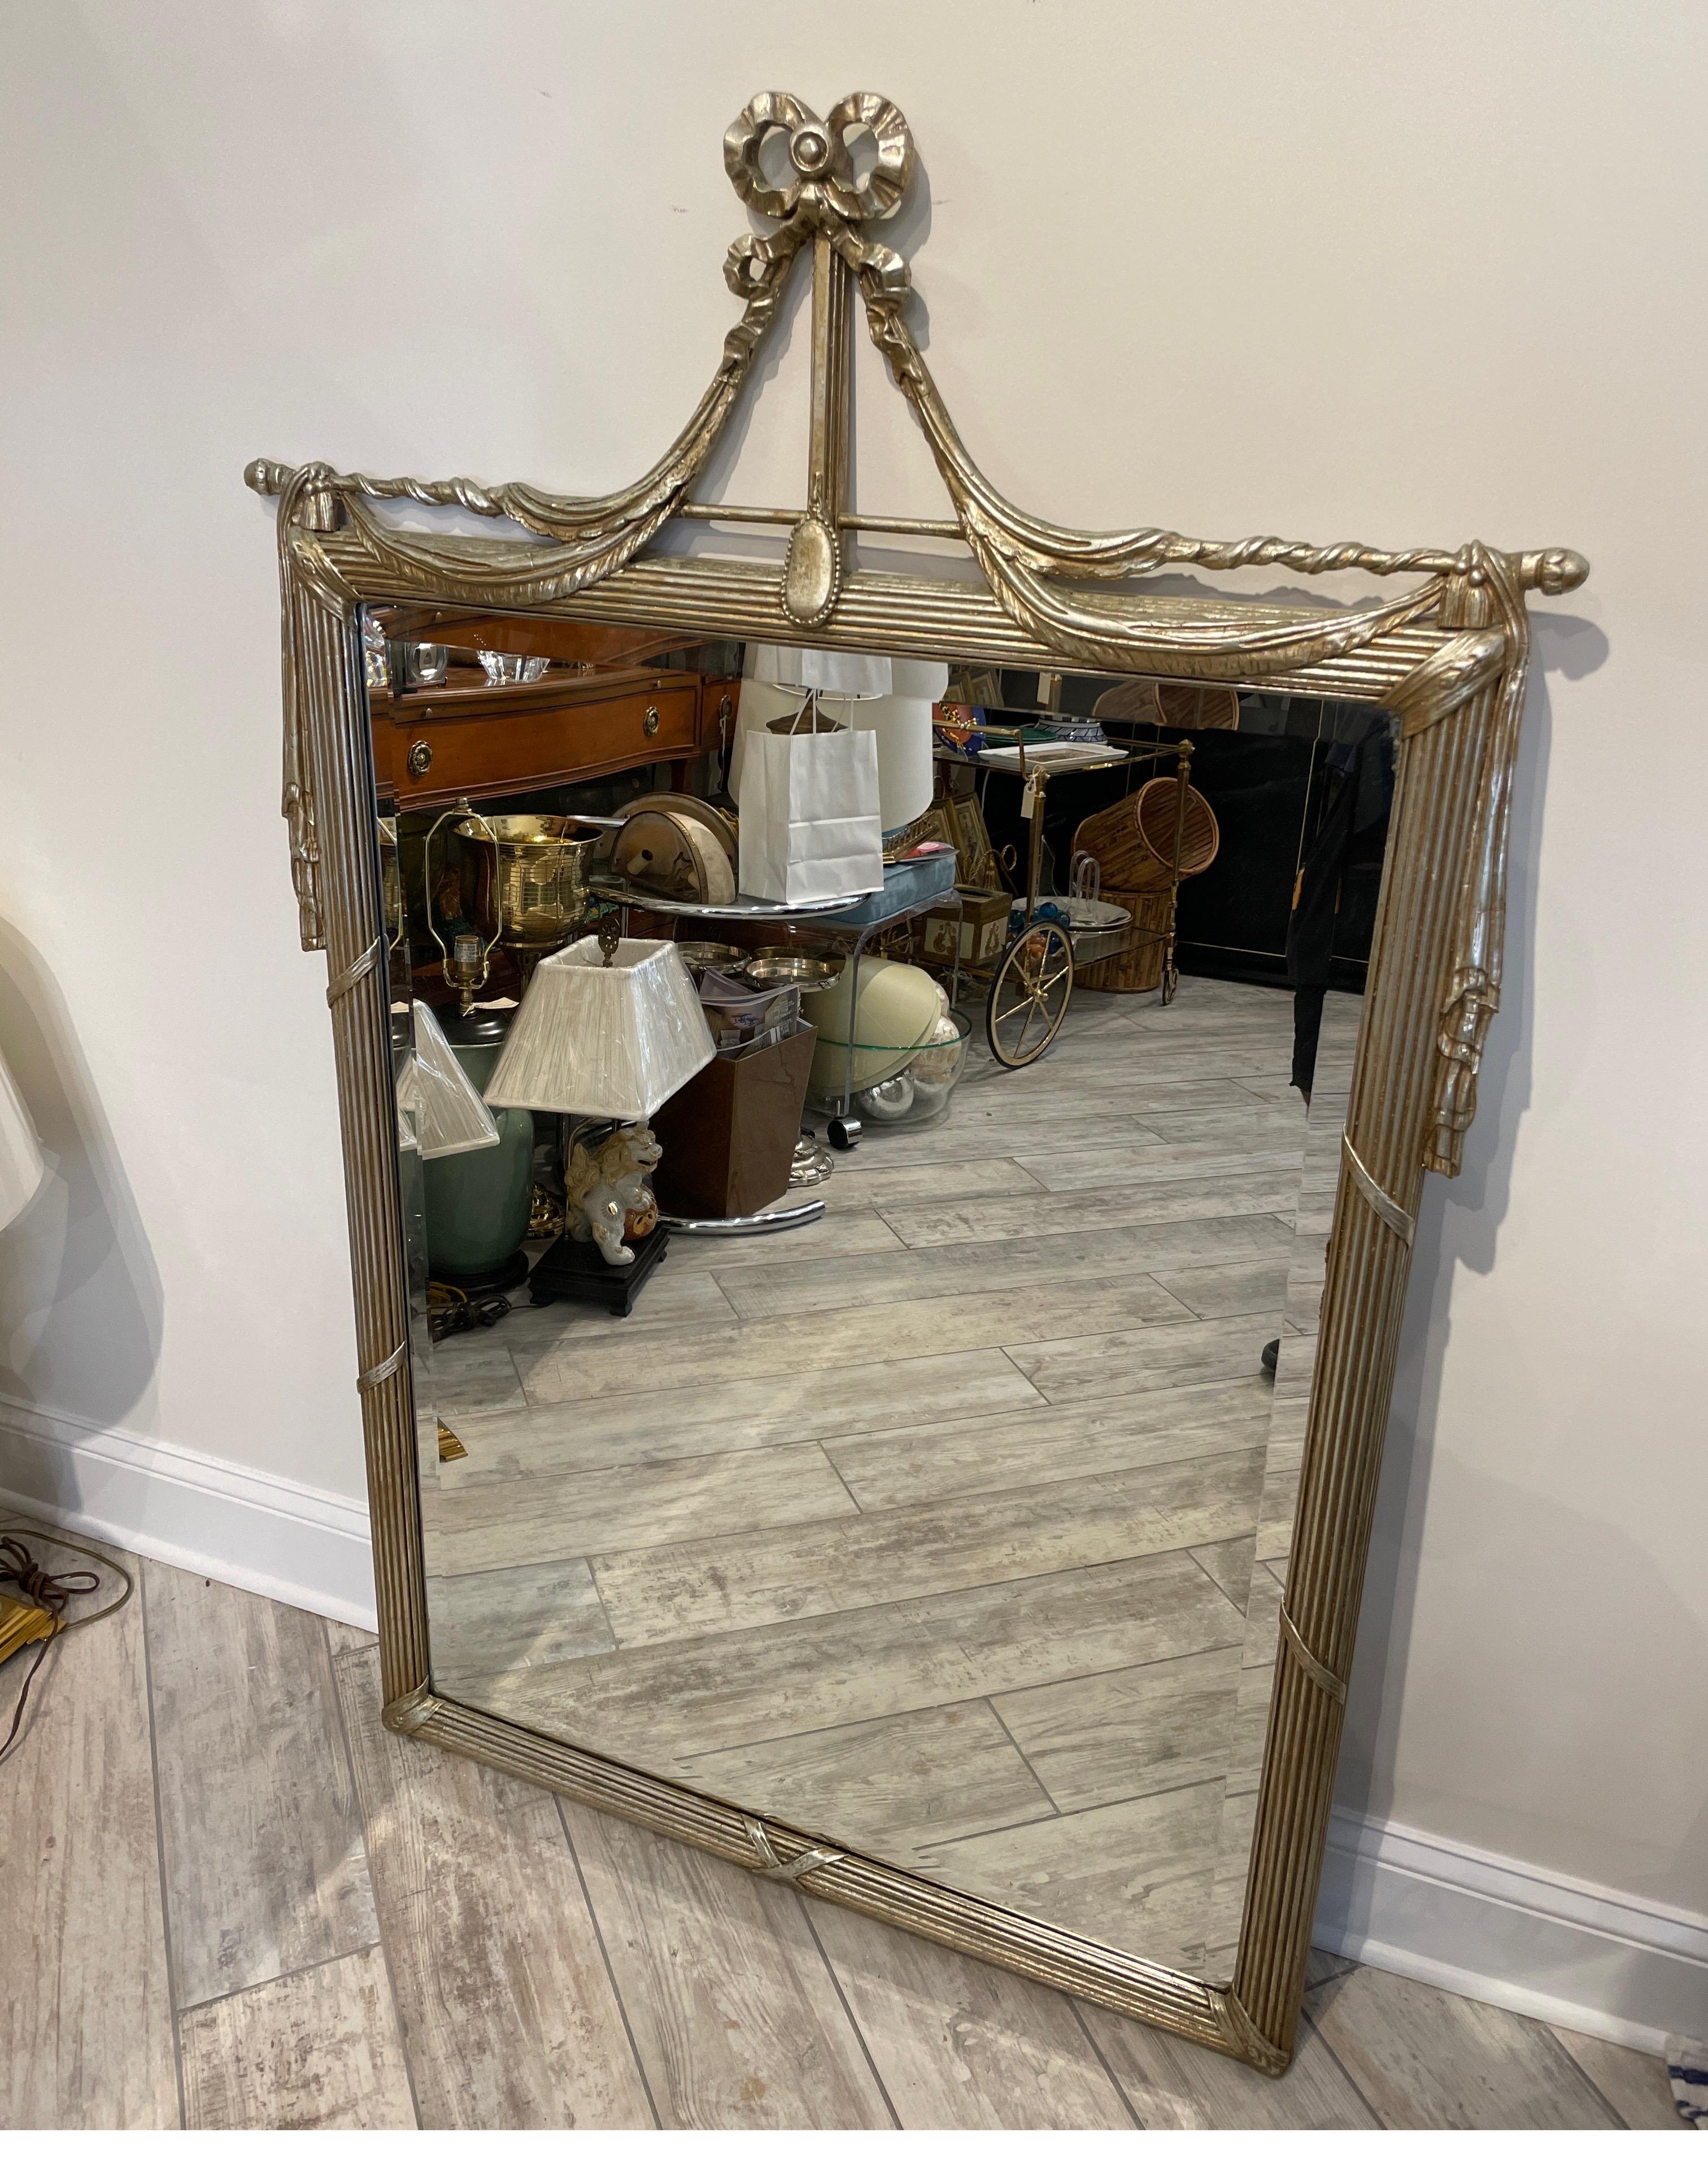 Grand miroir sculpté en argent doré dans le motif de la houppe et du ruban. Ce miroir vintage dans le style Hollywood Regency ajoutera du glamour à n'importe quelle pièce.